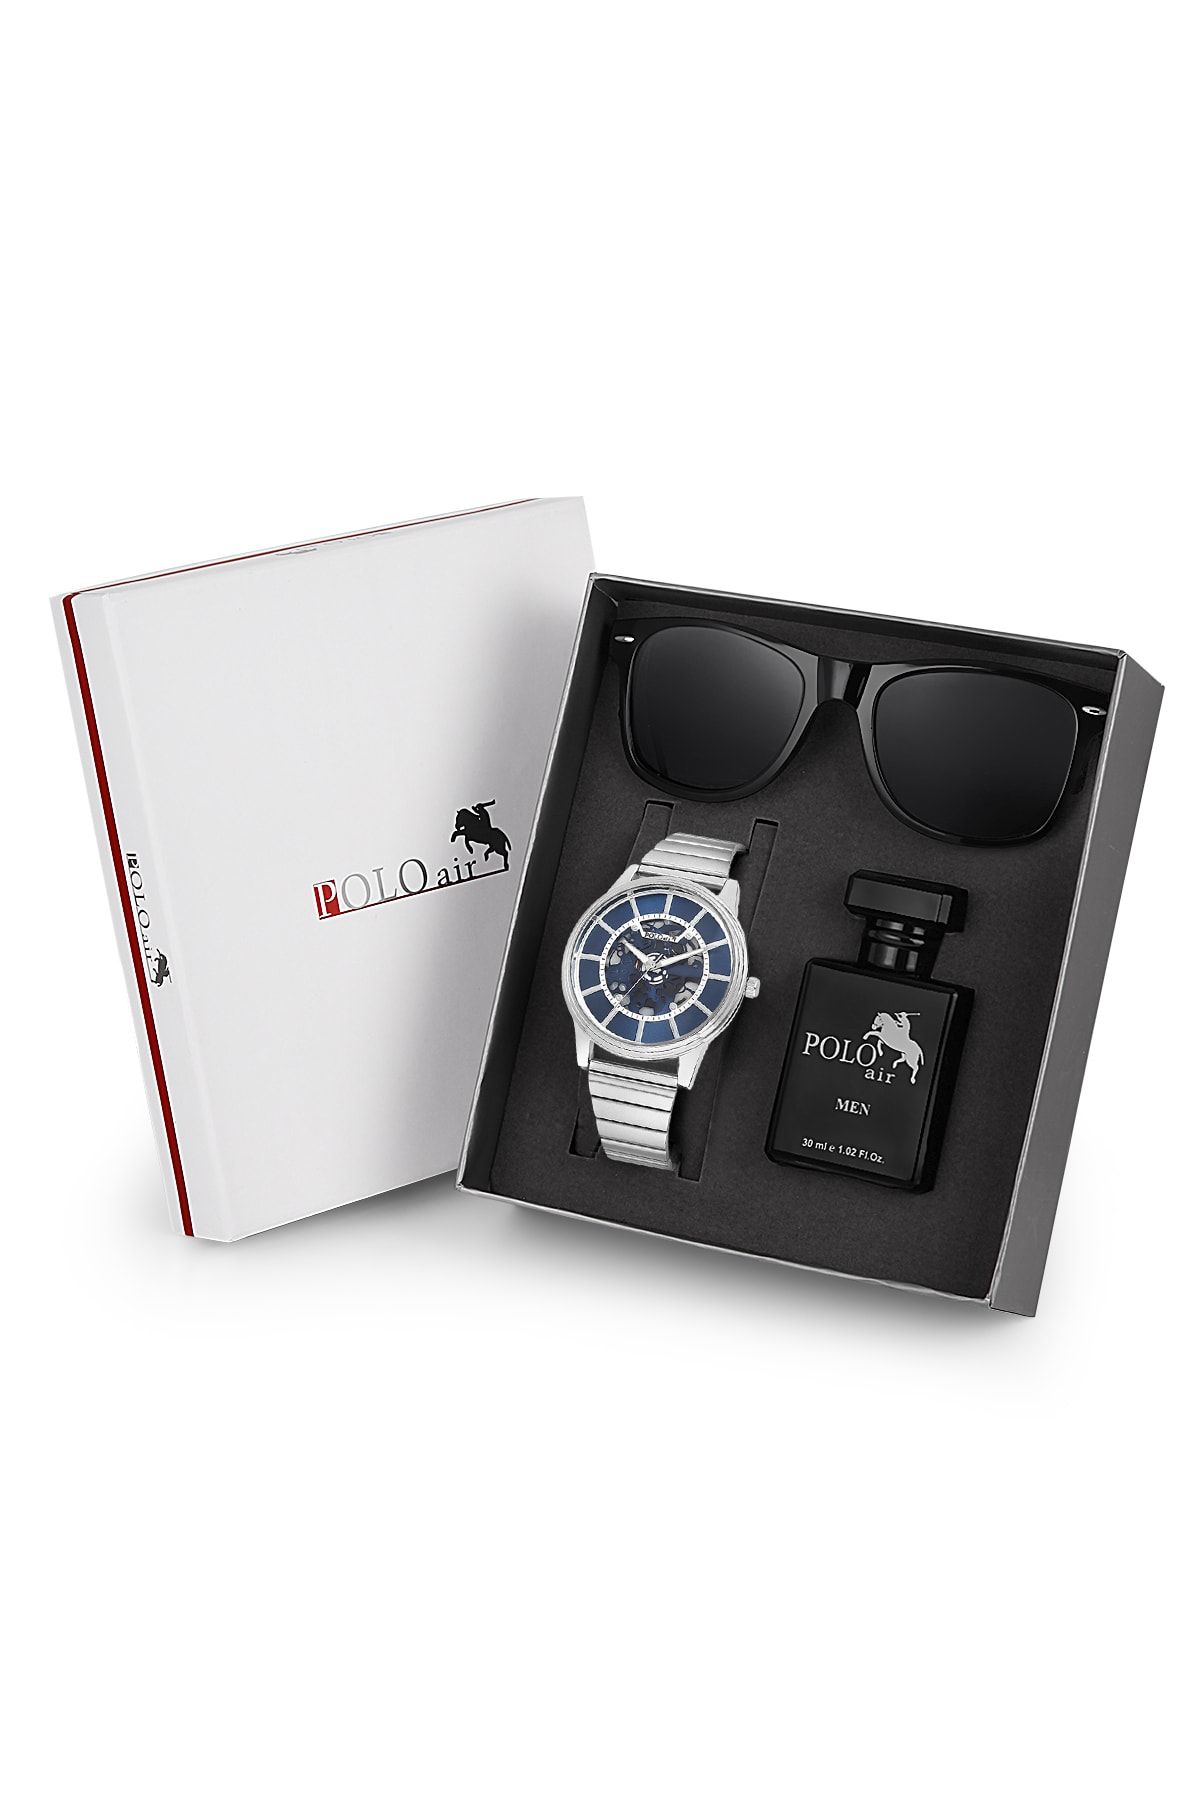 polo air Premium Set Kombin Erkek Kol Saati Parfüm Gözlük Set Gümüş-mavi Renk